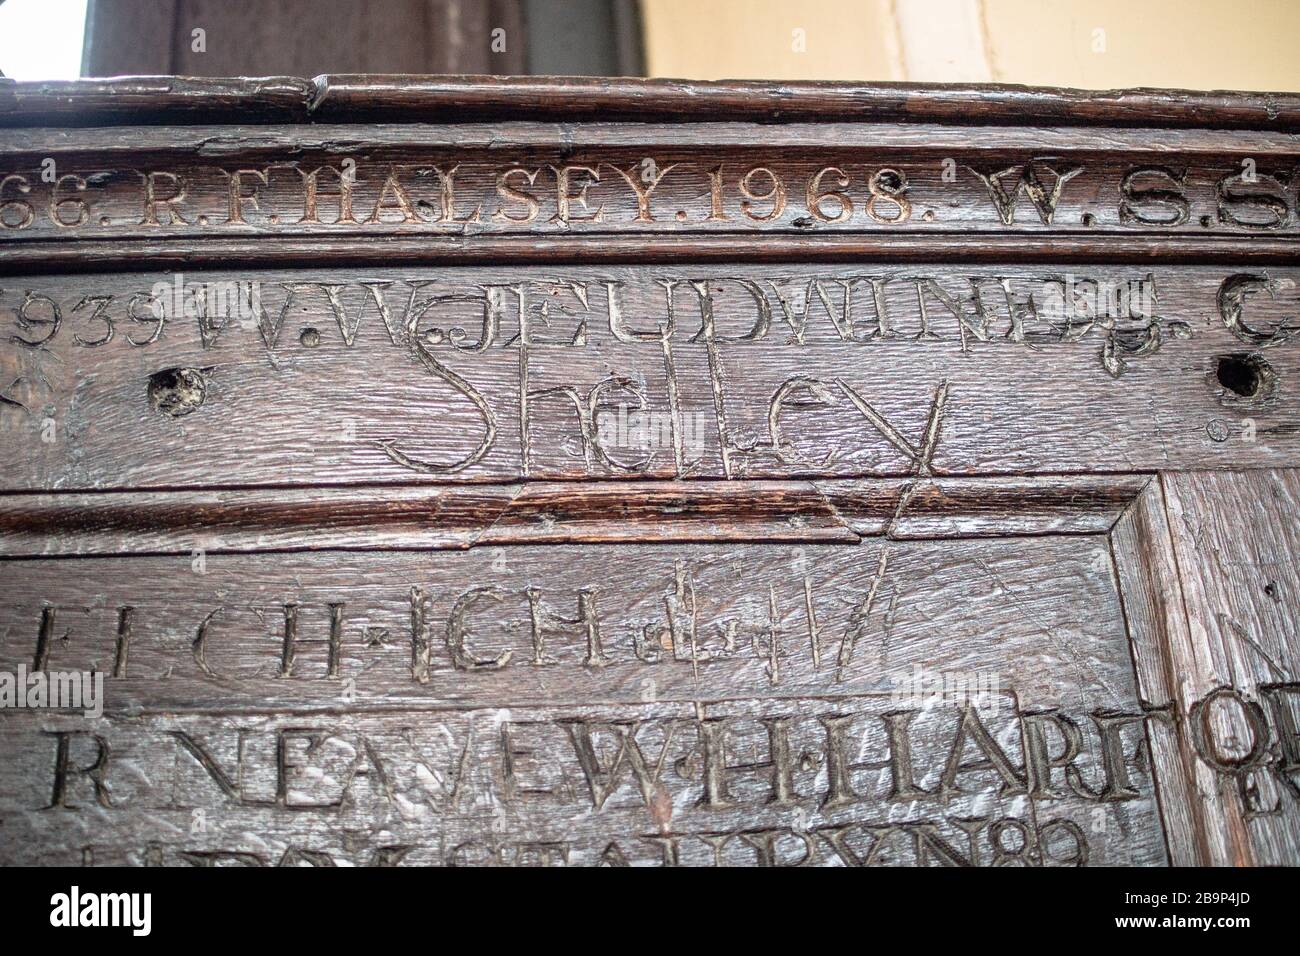 Lambris en bois à l'école supérieure, Eton College montrant le nom de Percy Byshe Shelley sculpté parmi d'autres anciens élèves. Le nom de Shelley est écrit de façon unique. Banque D'Images